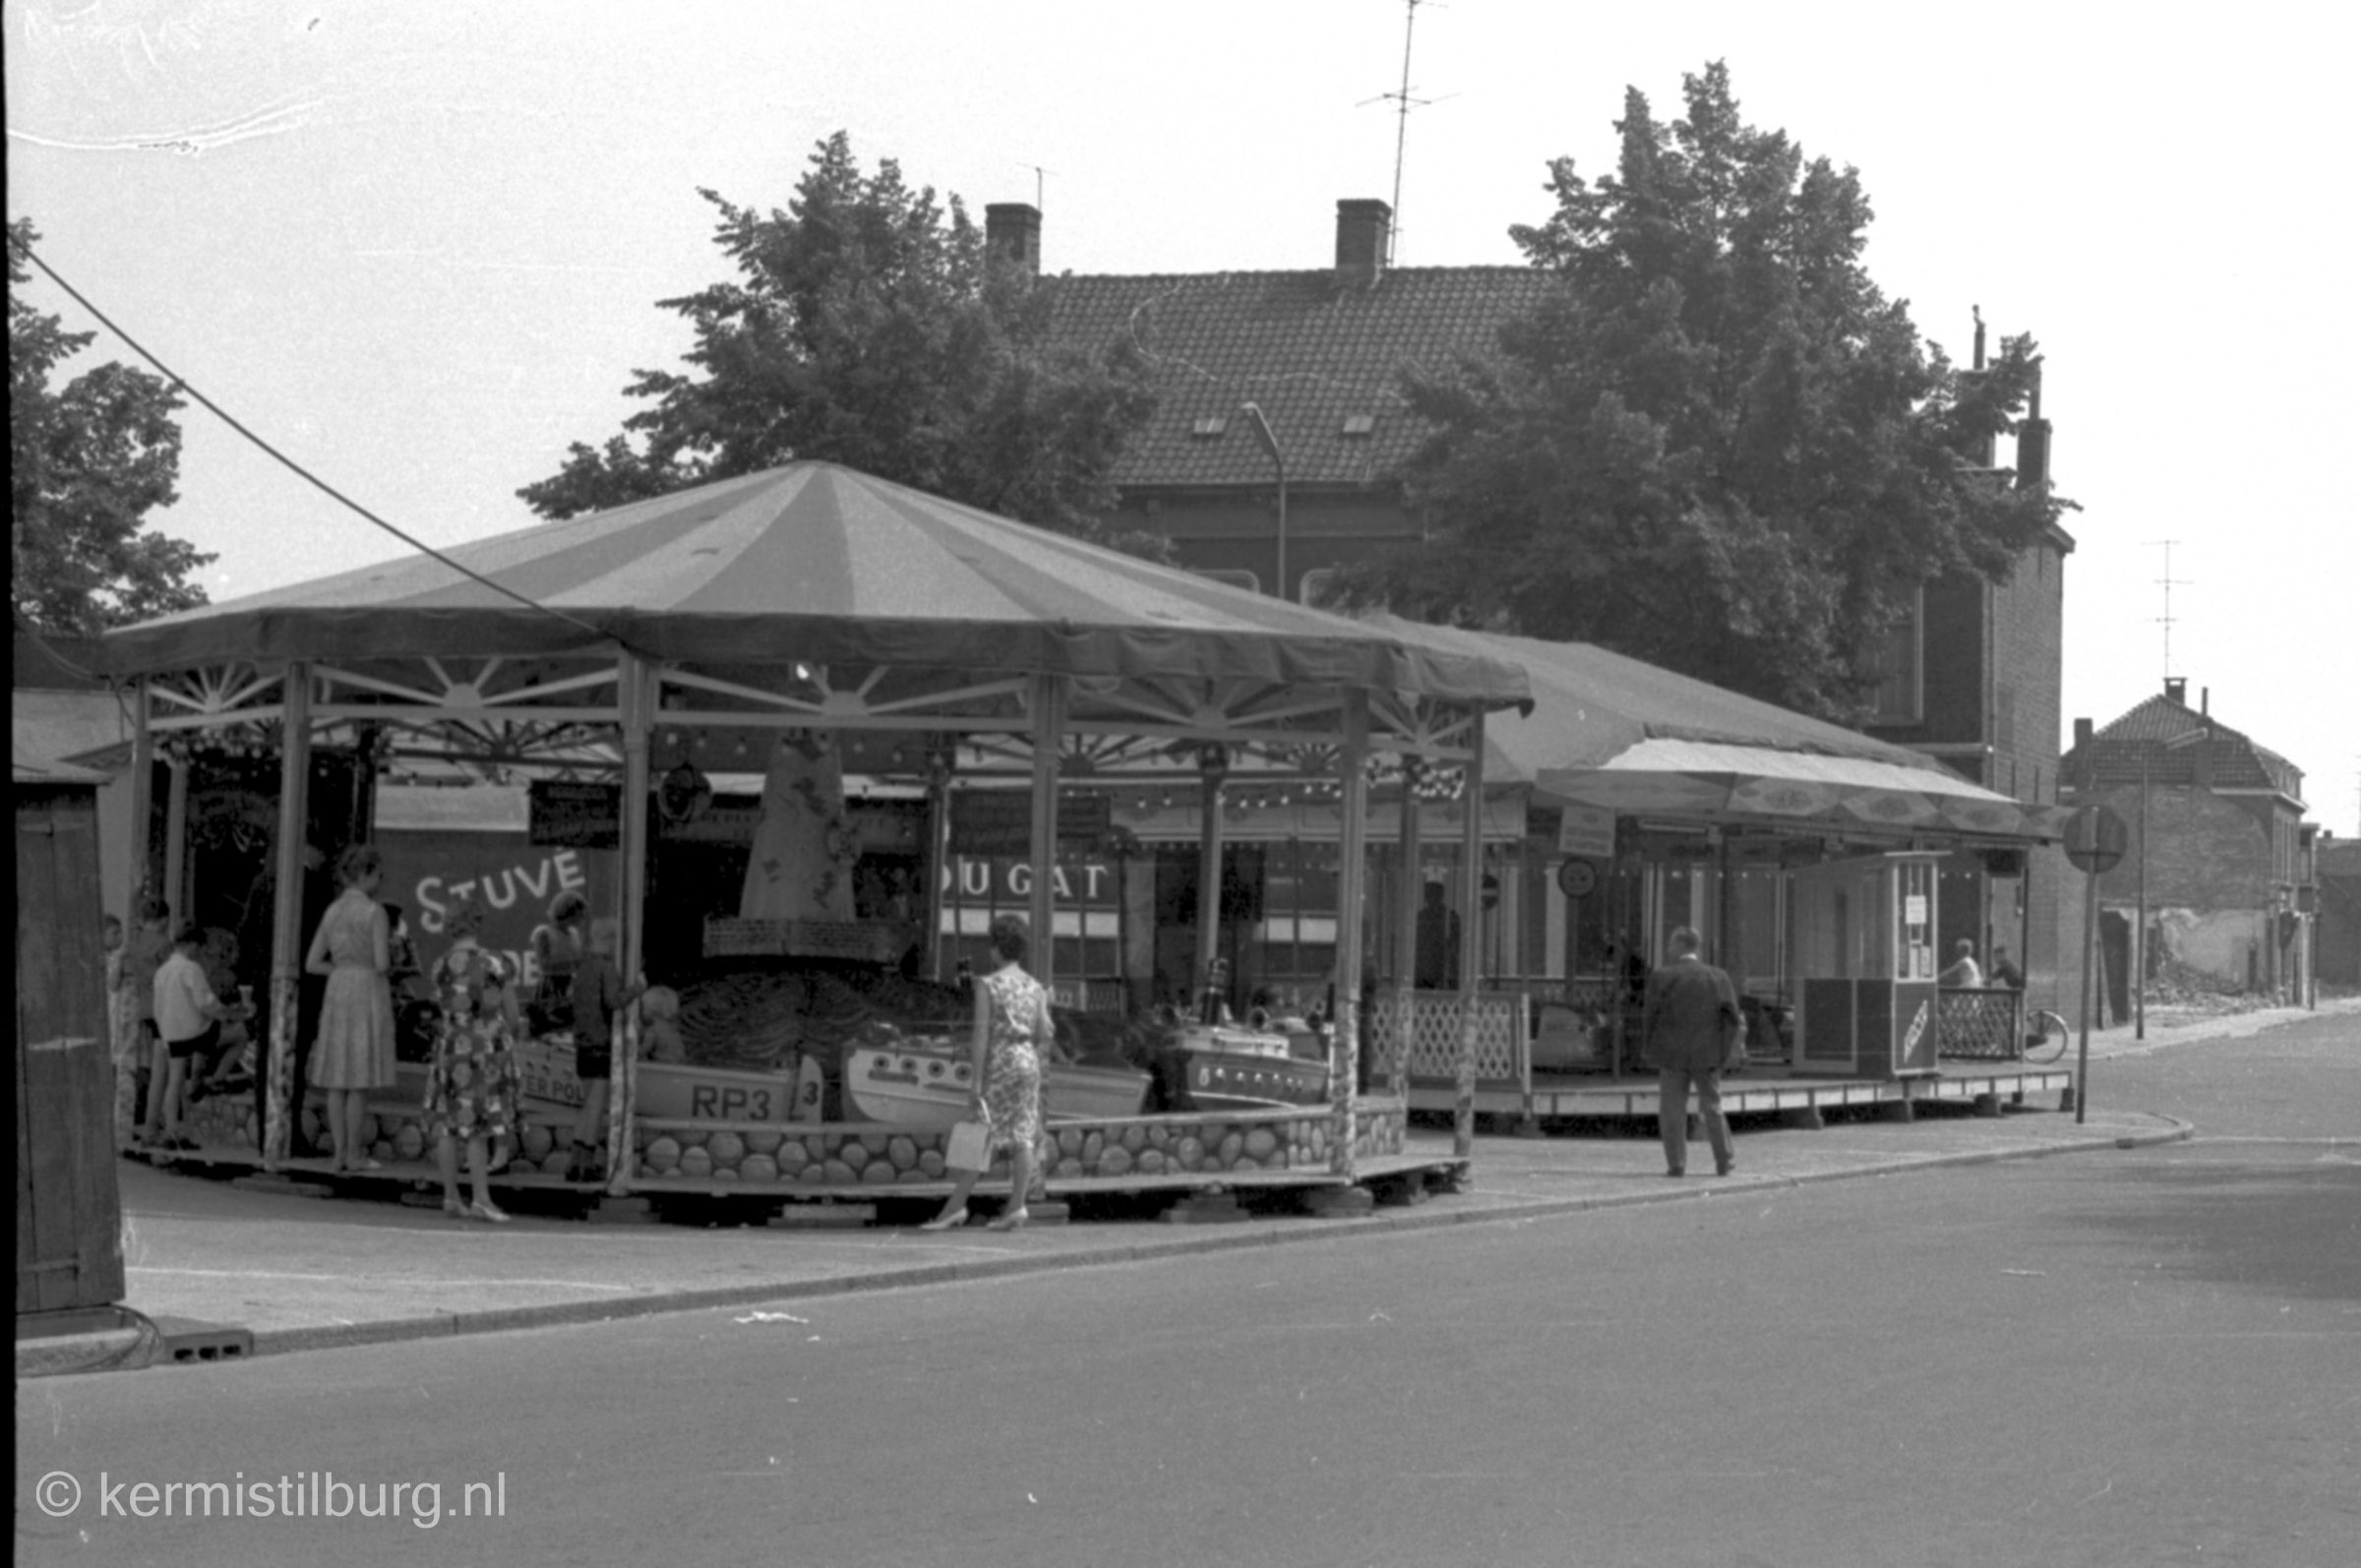 1964, Kermis, Tilburg, Tilburgse kermis, skc